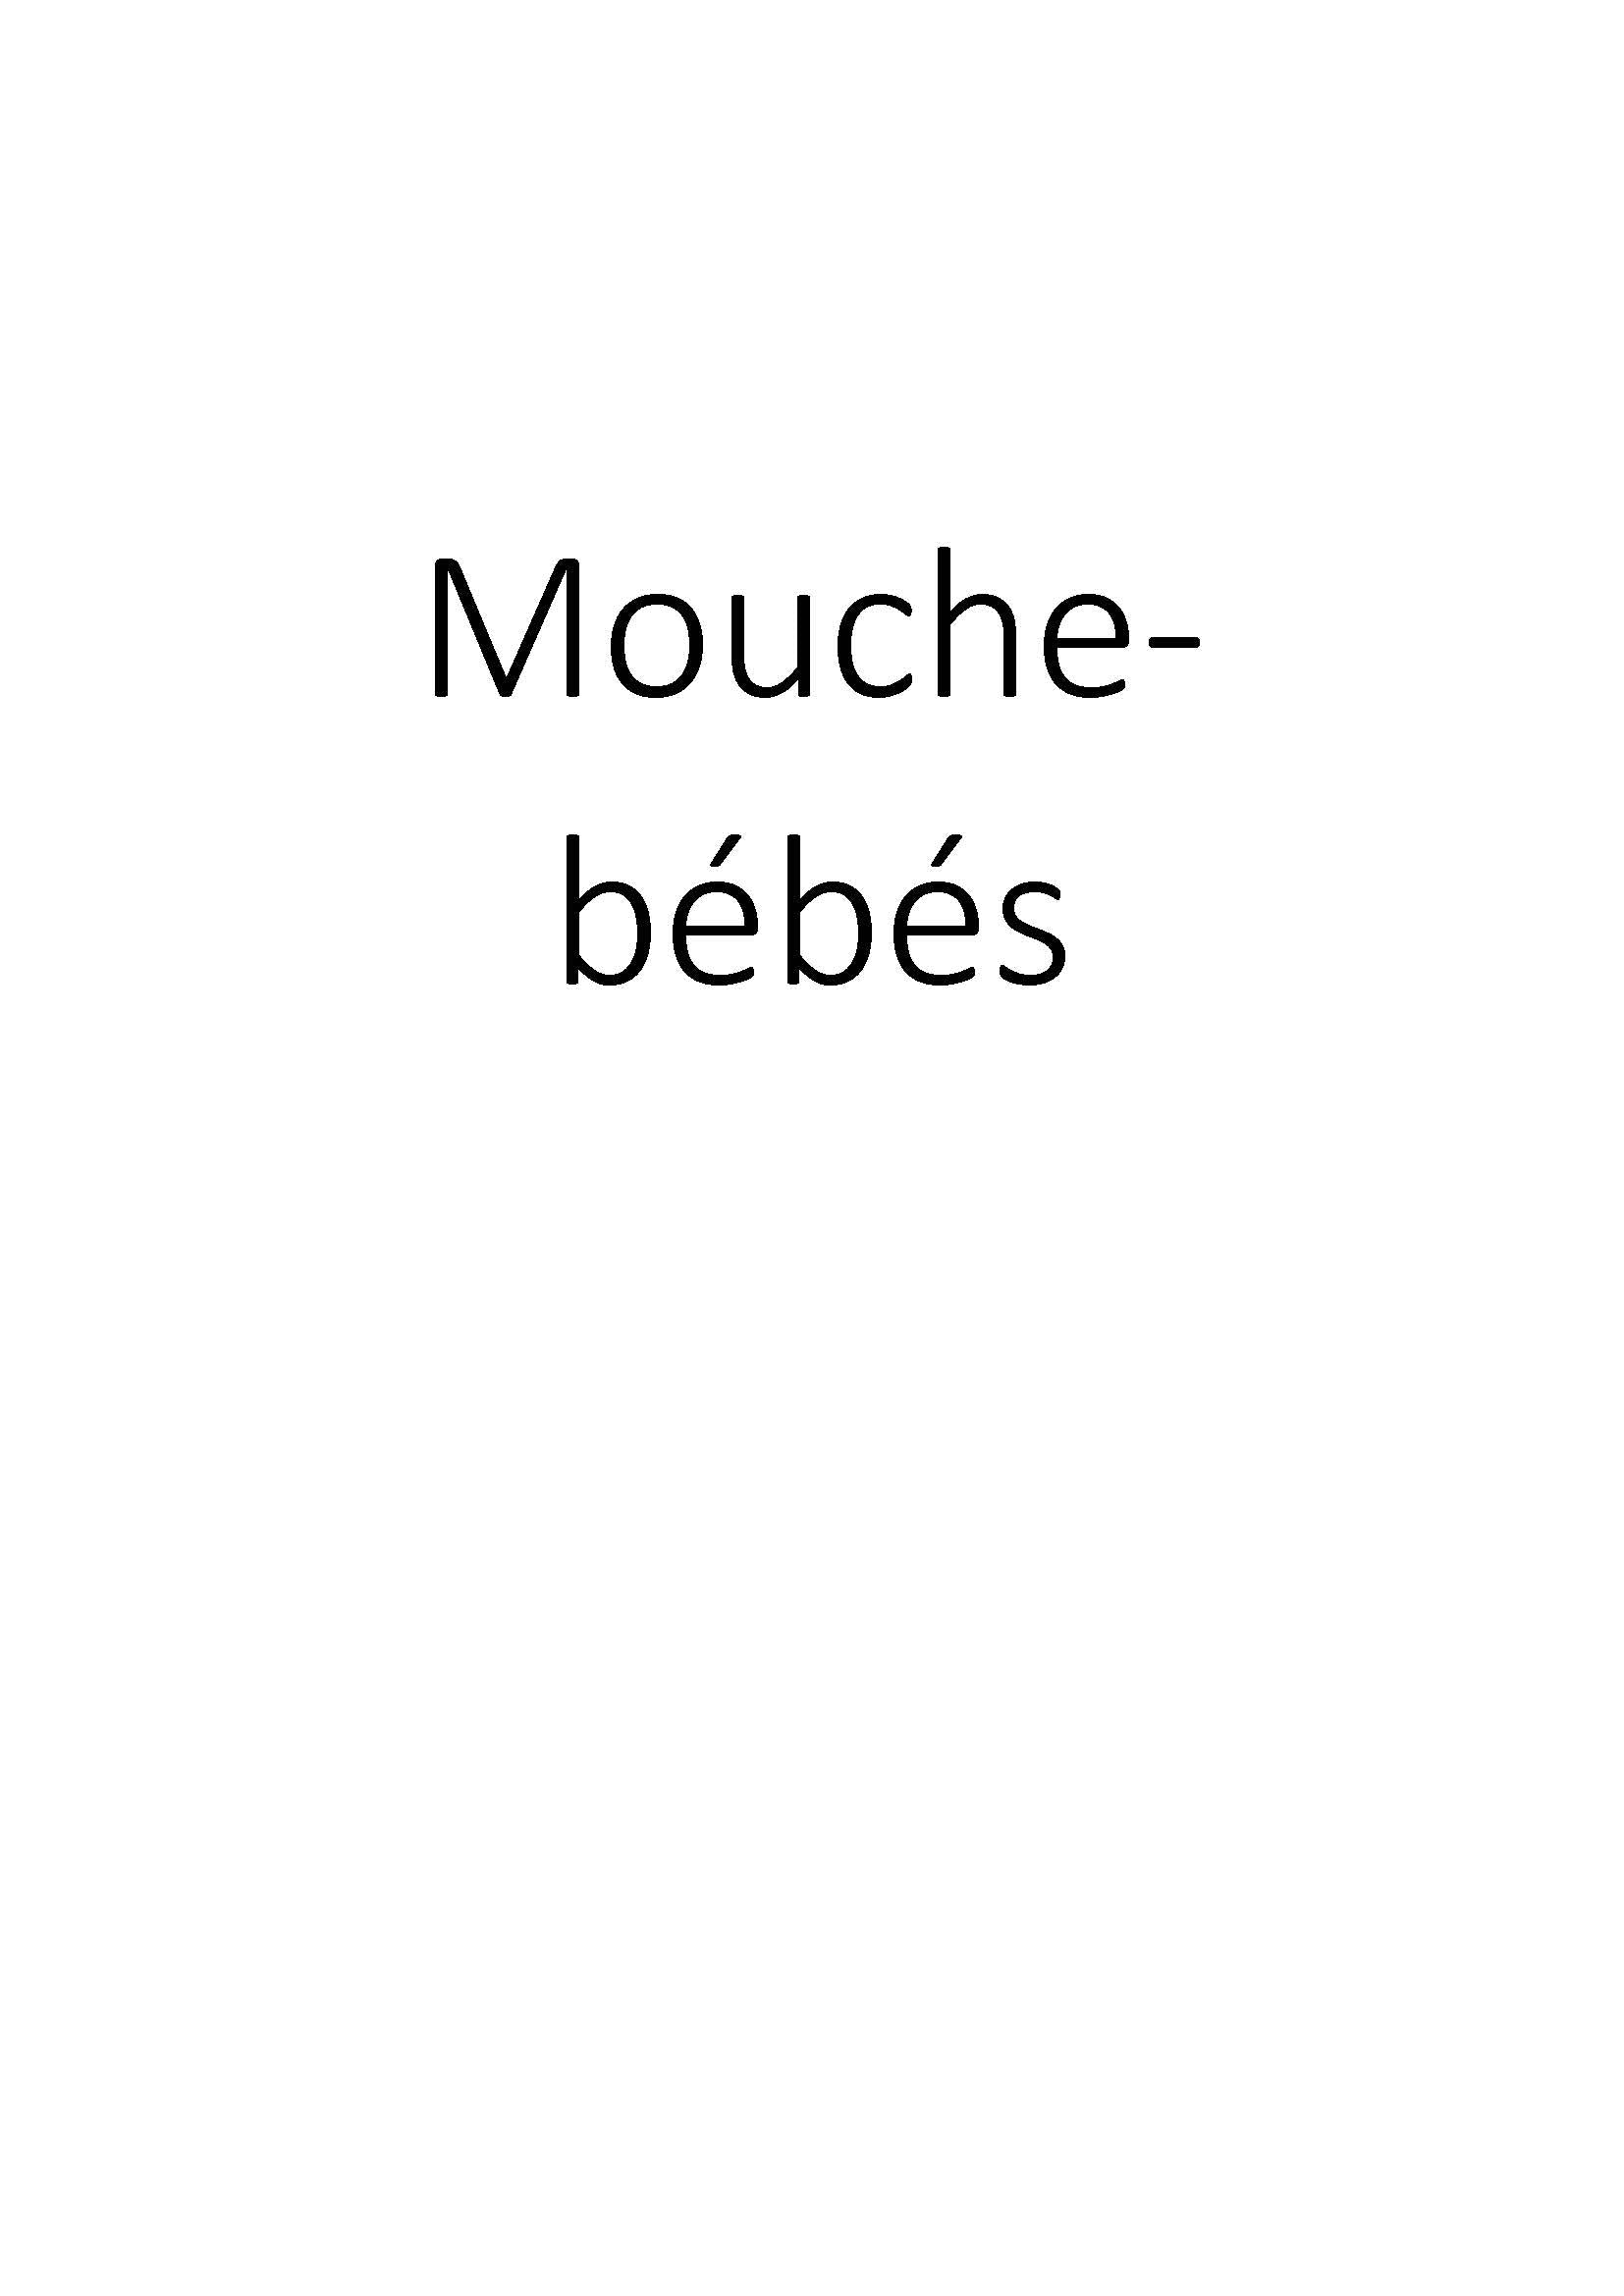 Mouche-bébés clicktofournisseur.com